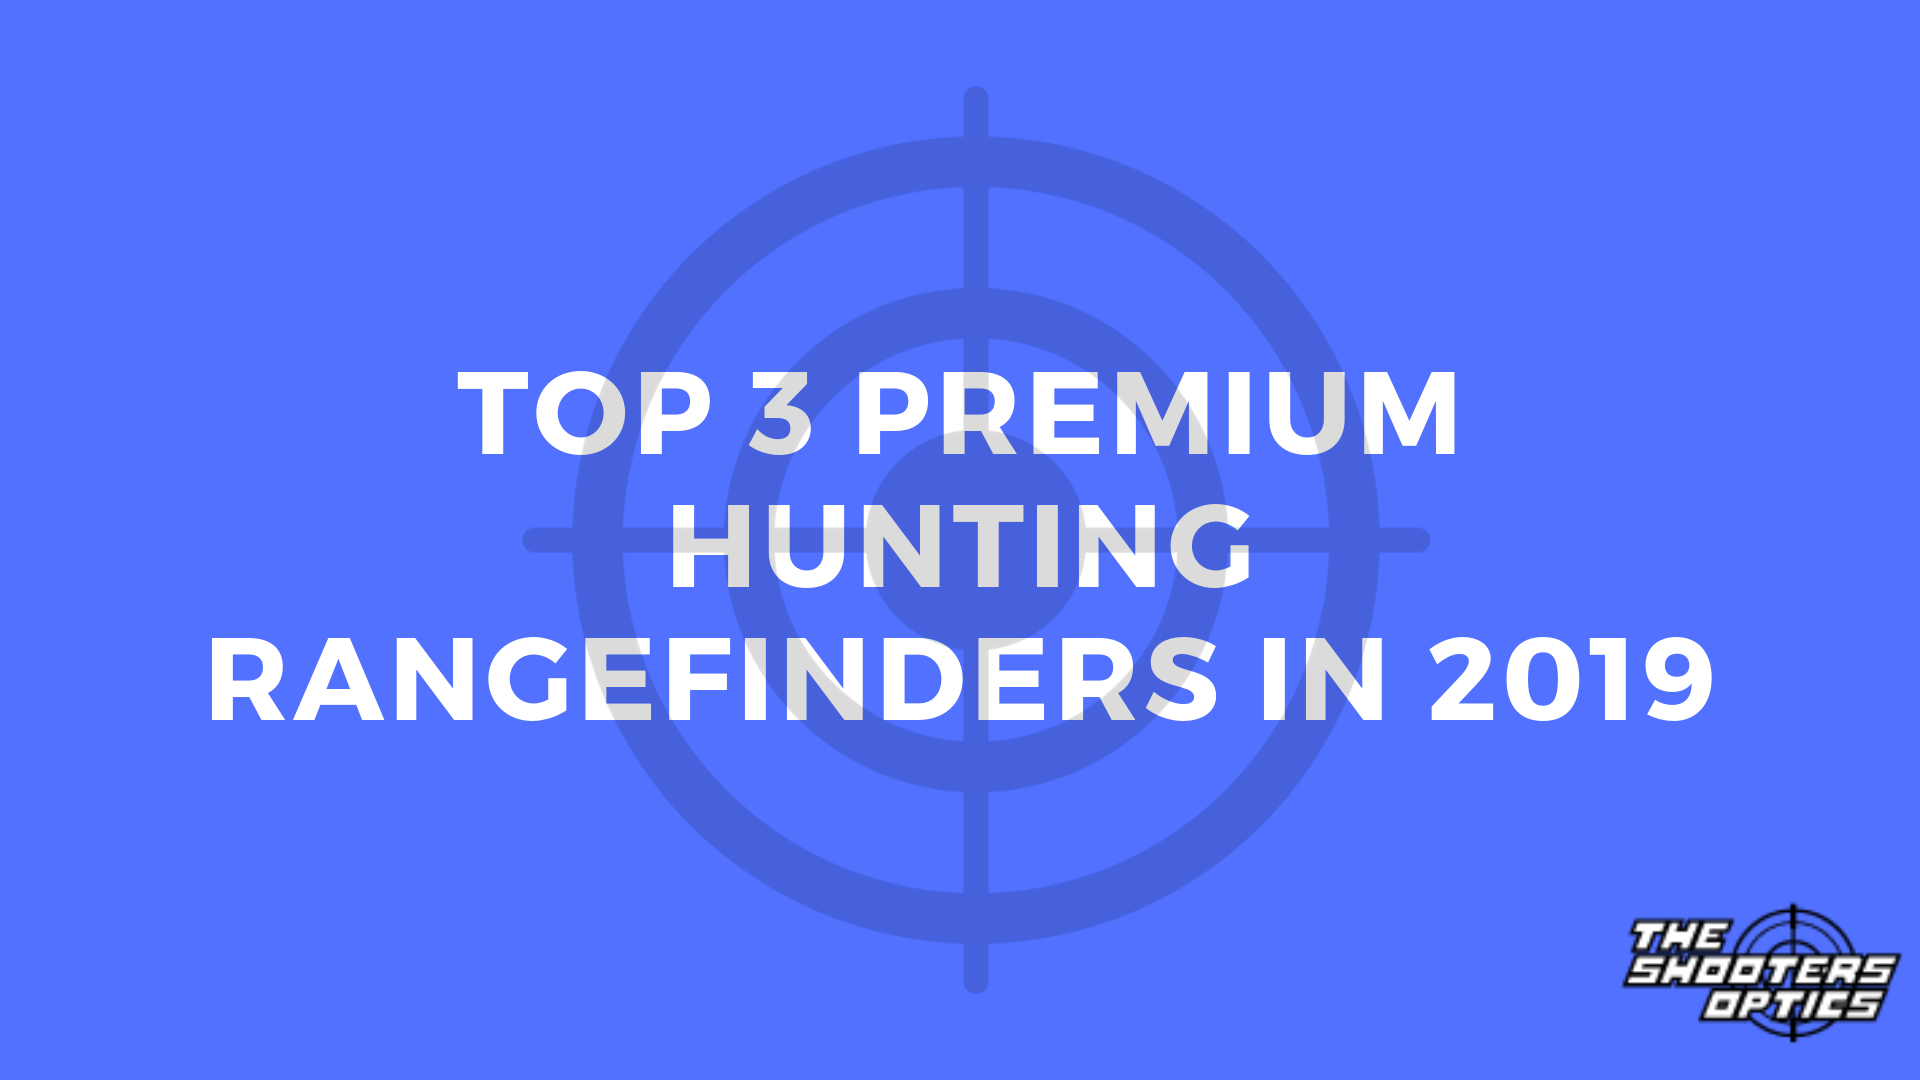 Top 3 Premium Hunting Rangefinders in 2019